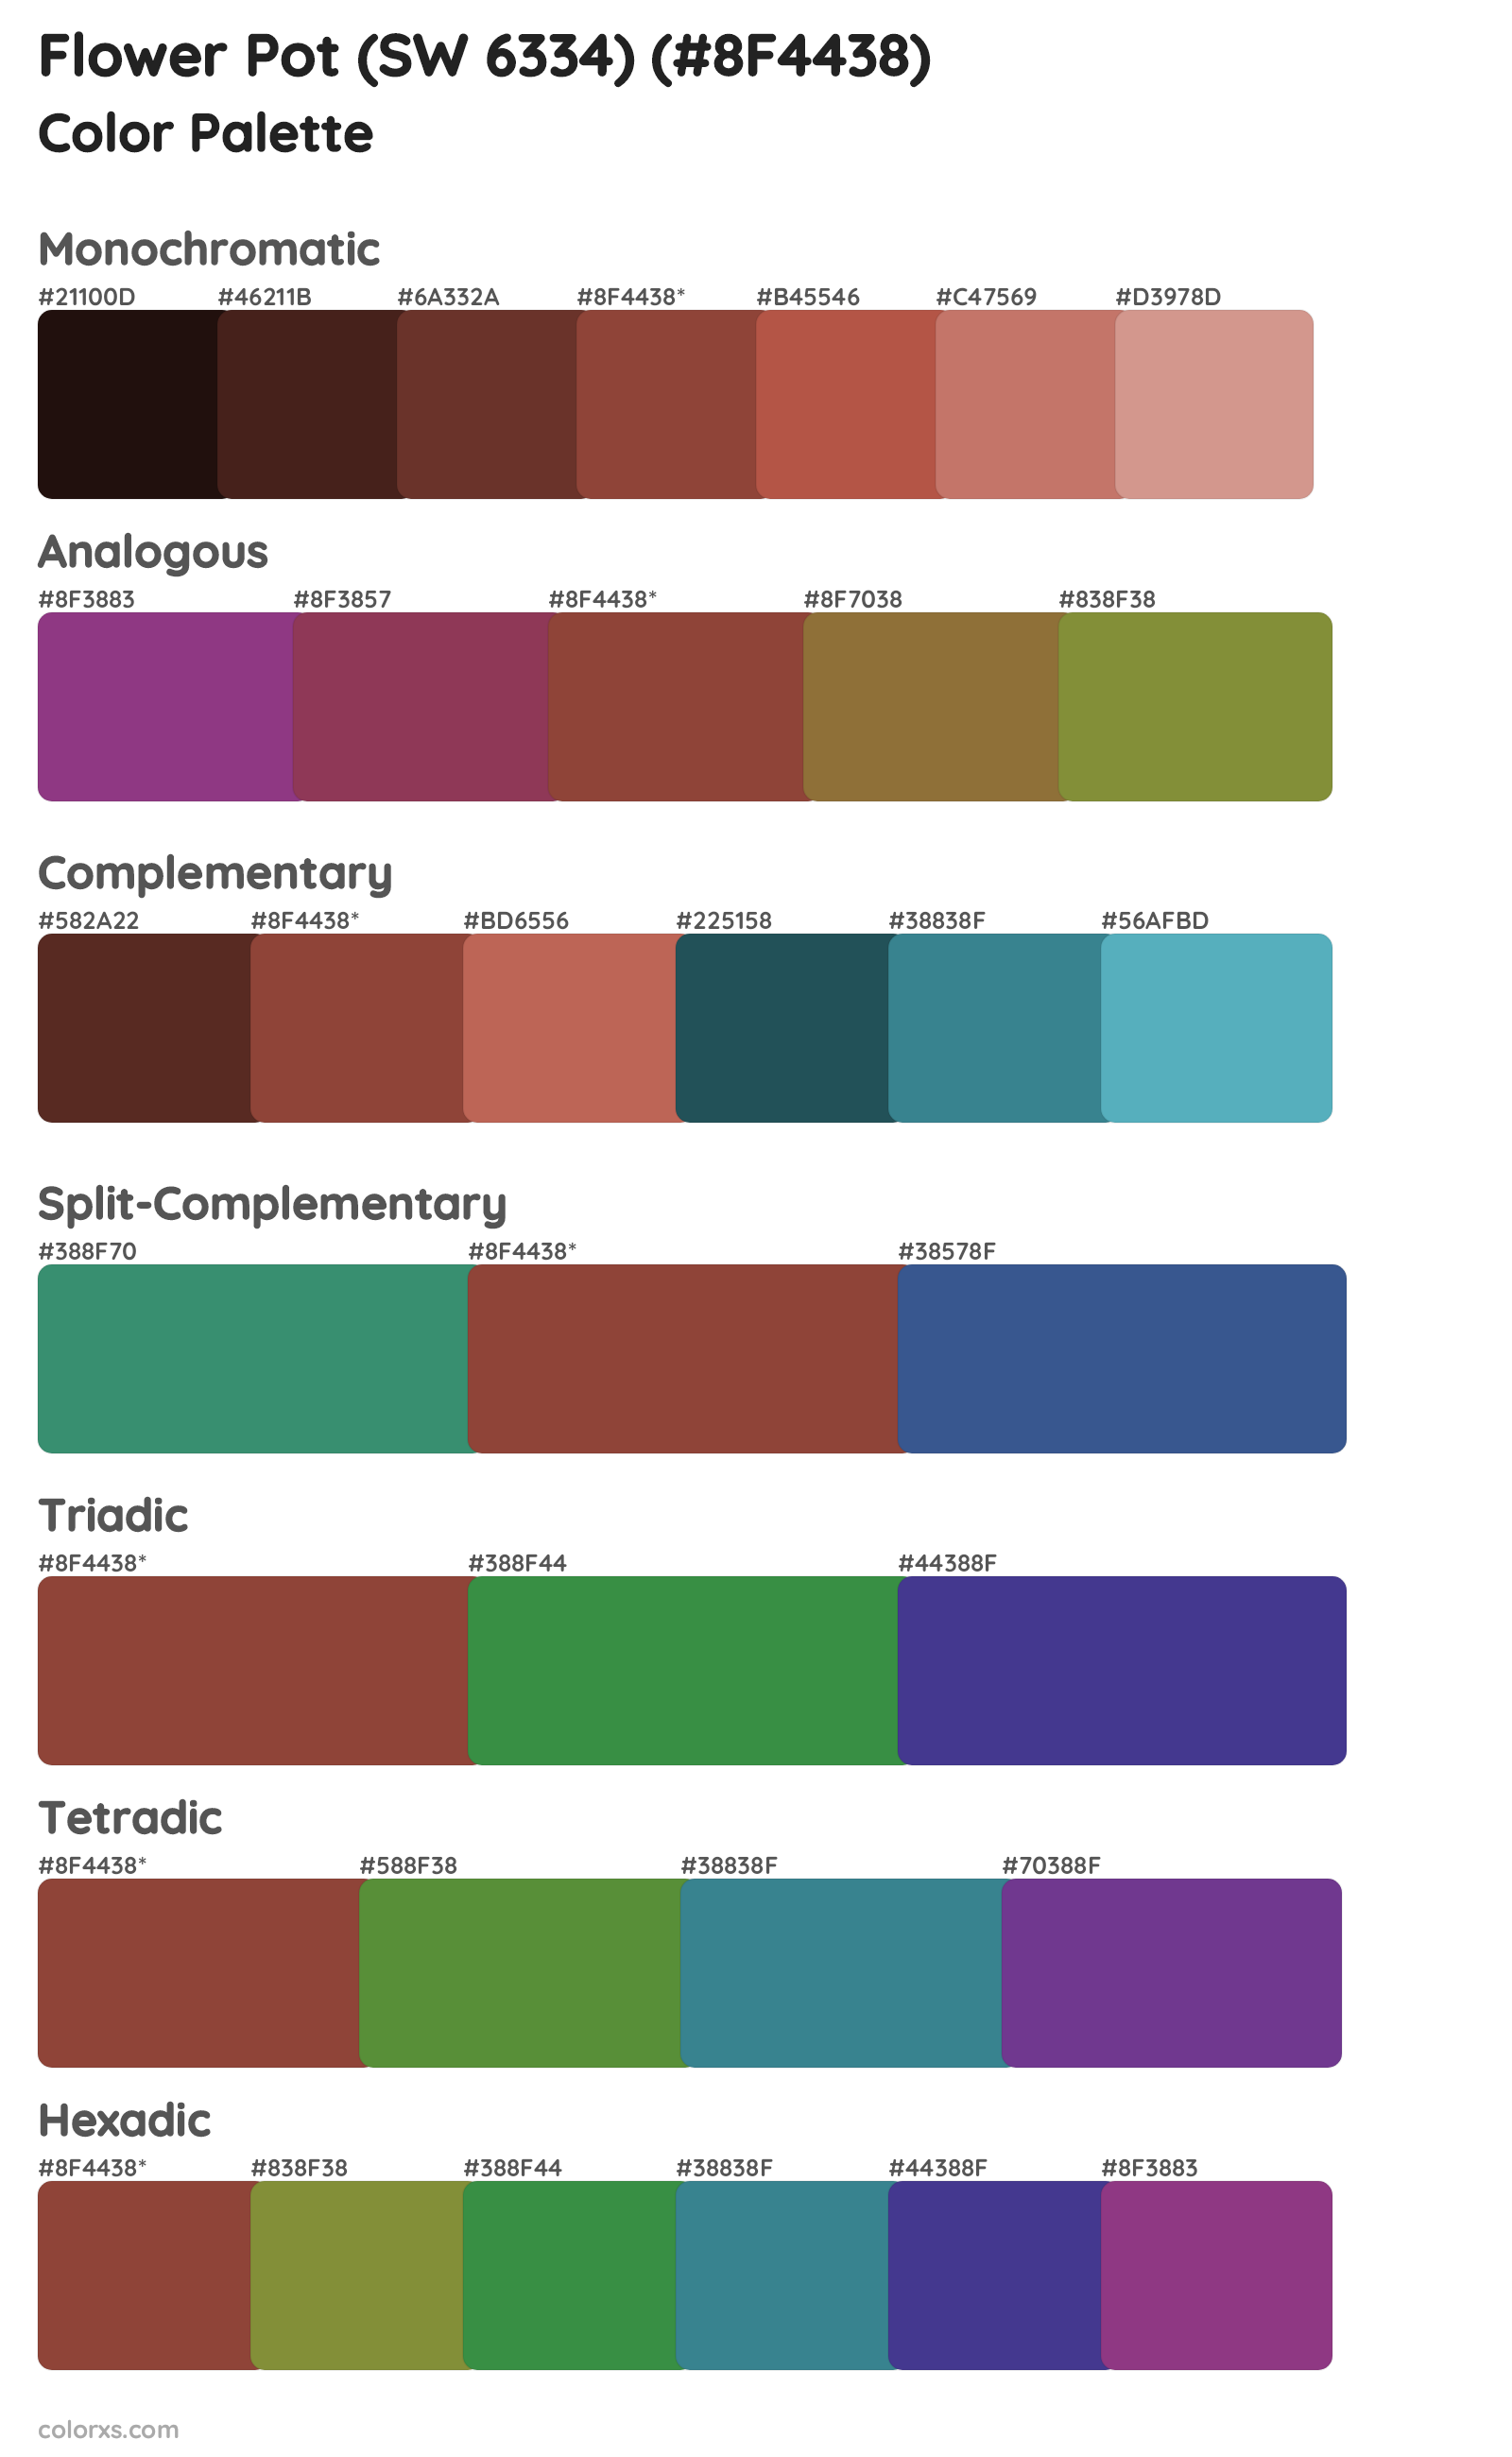 Flower Pot (SW 6334) Color Scheme Palettes